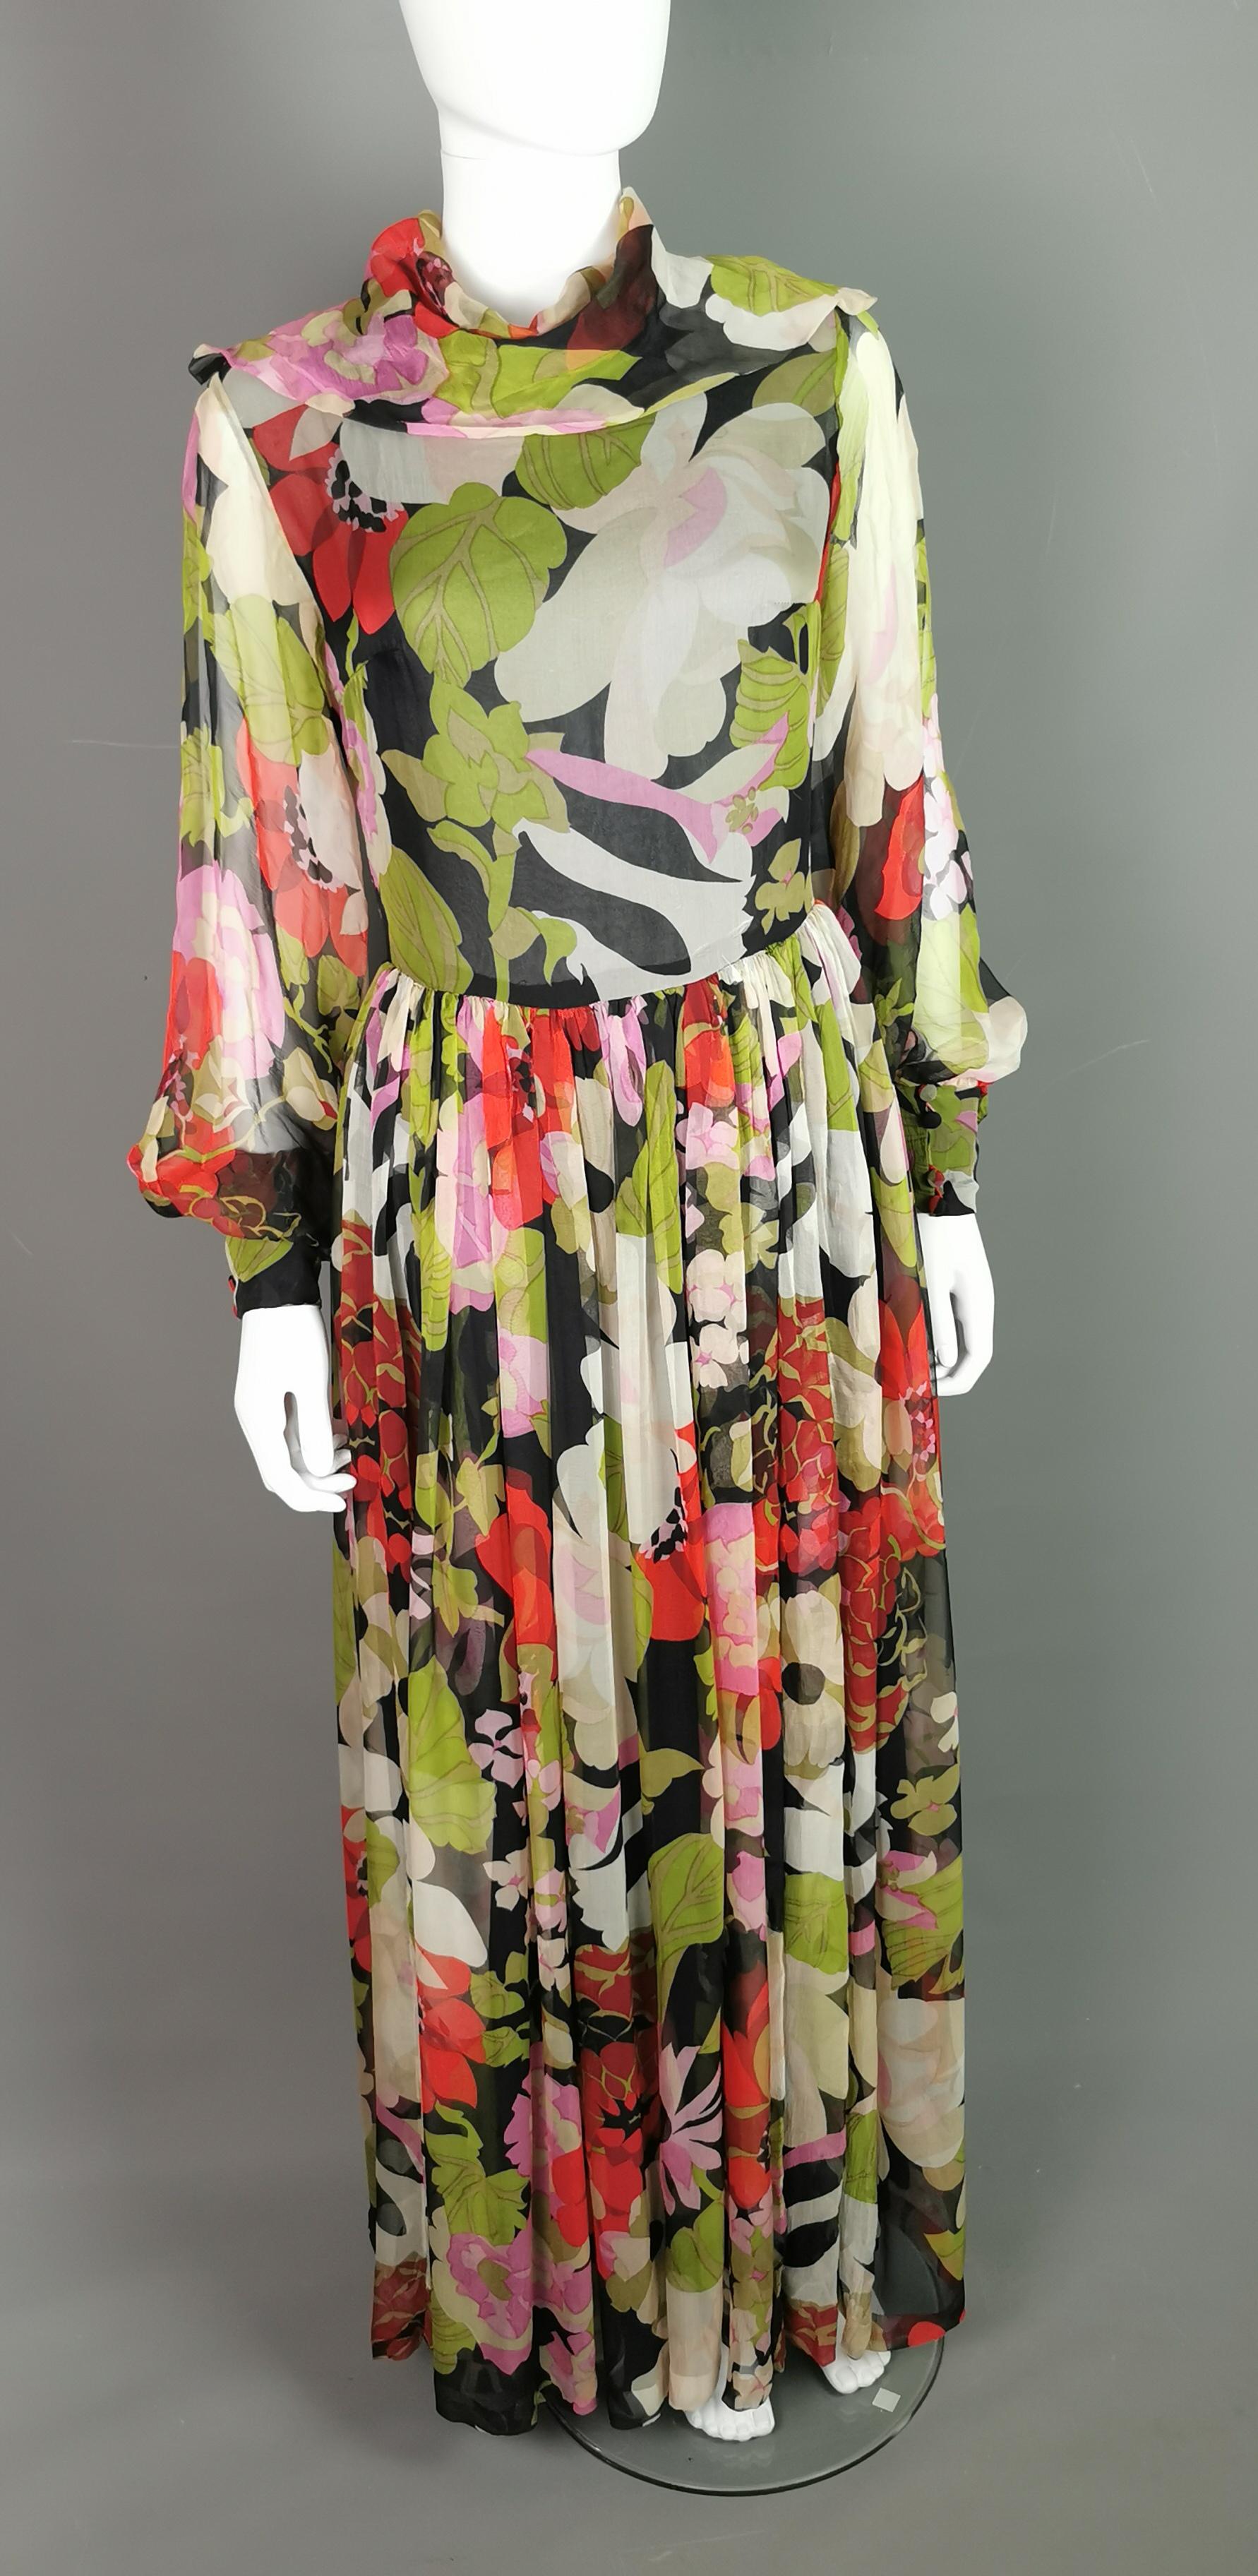 Das schönste geblümte Maxikleid aus den 1970er Jahren.

Das Kleid ist aus herrlich weichem, durchscheinendem Seidengeorgette gefertigt, das mit einem Blumenmuster auf dunklem Grund bedruckt ist. Es hat einen ungewöhnlichen Kuttenausschnitt und